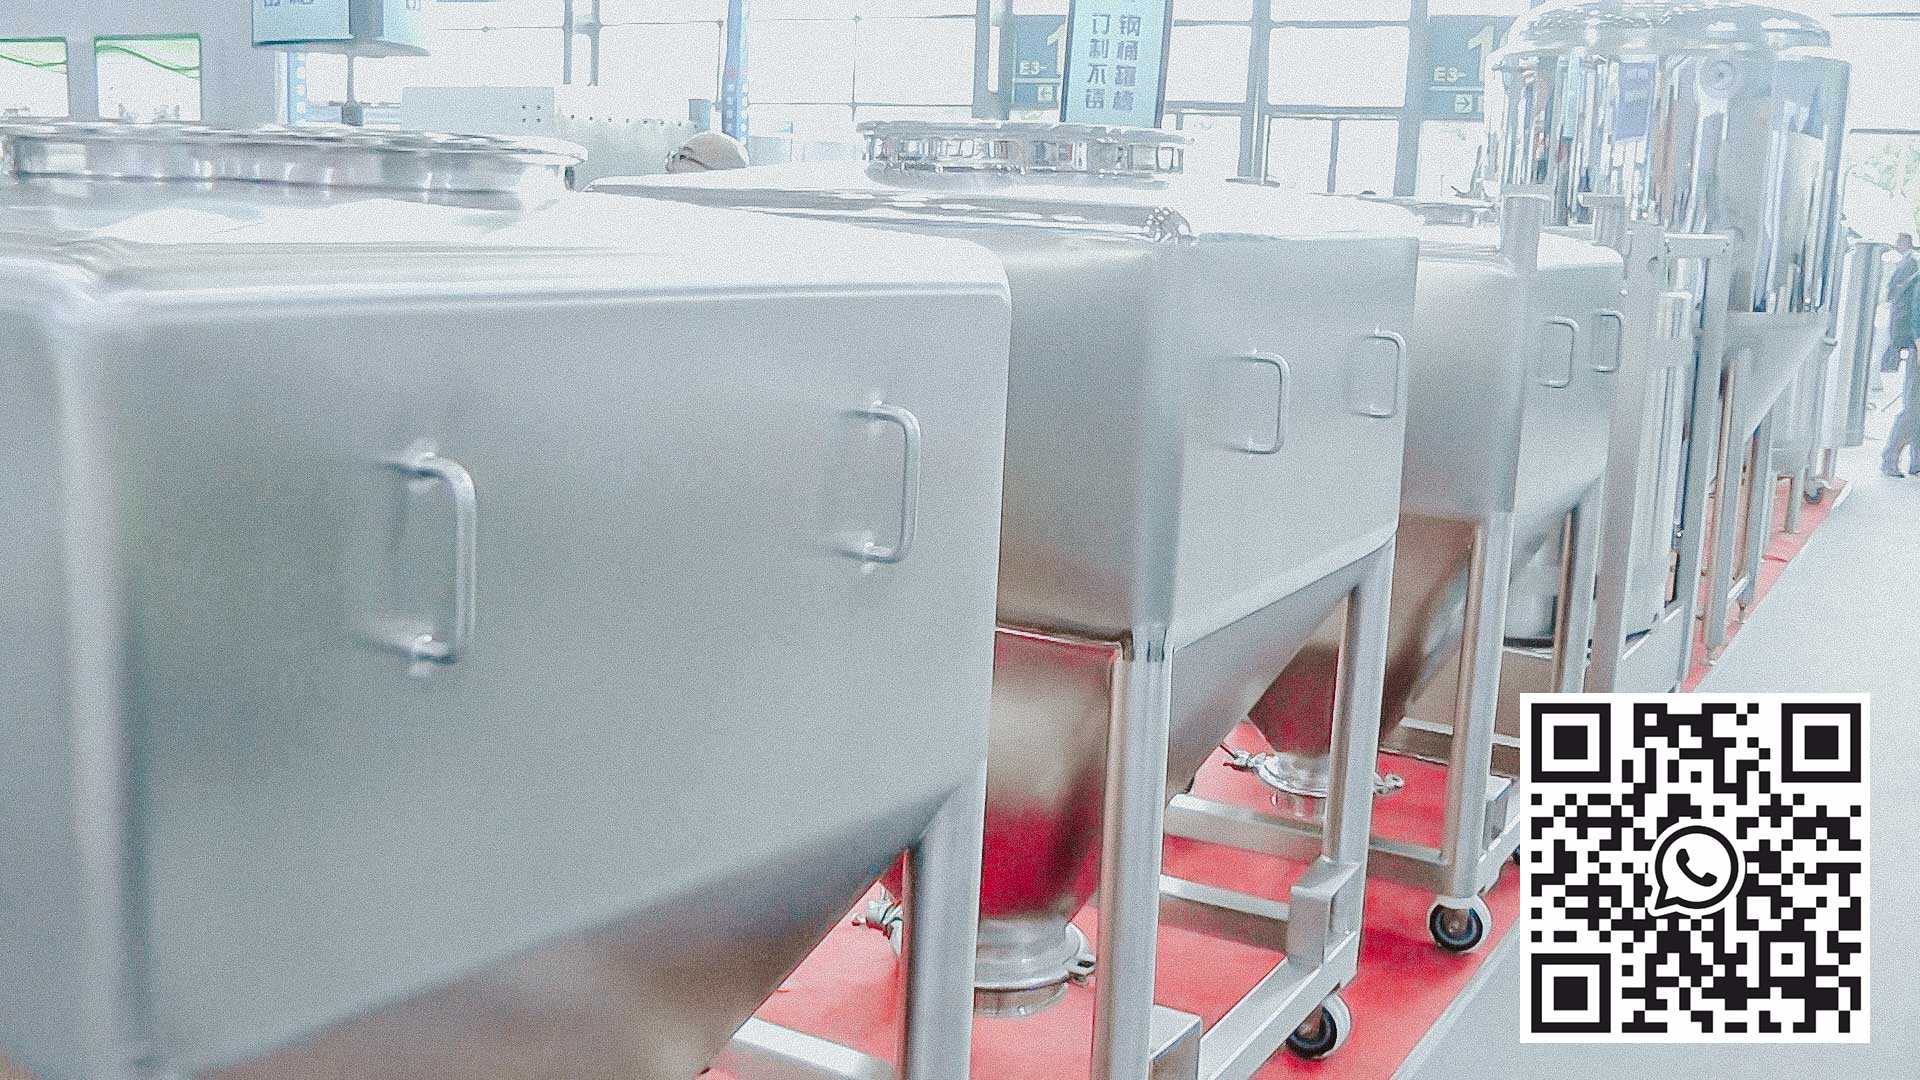 Zbiorniki ze stali nierdzewnej do przechowywania i przygotowywania płynnych leków